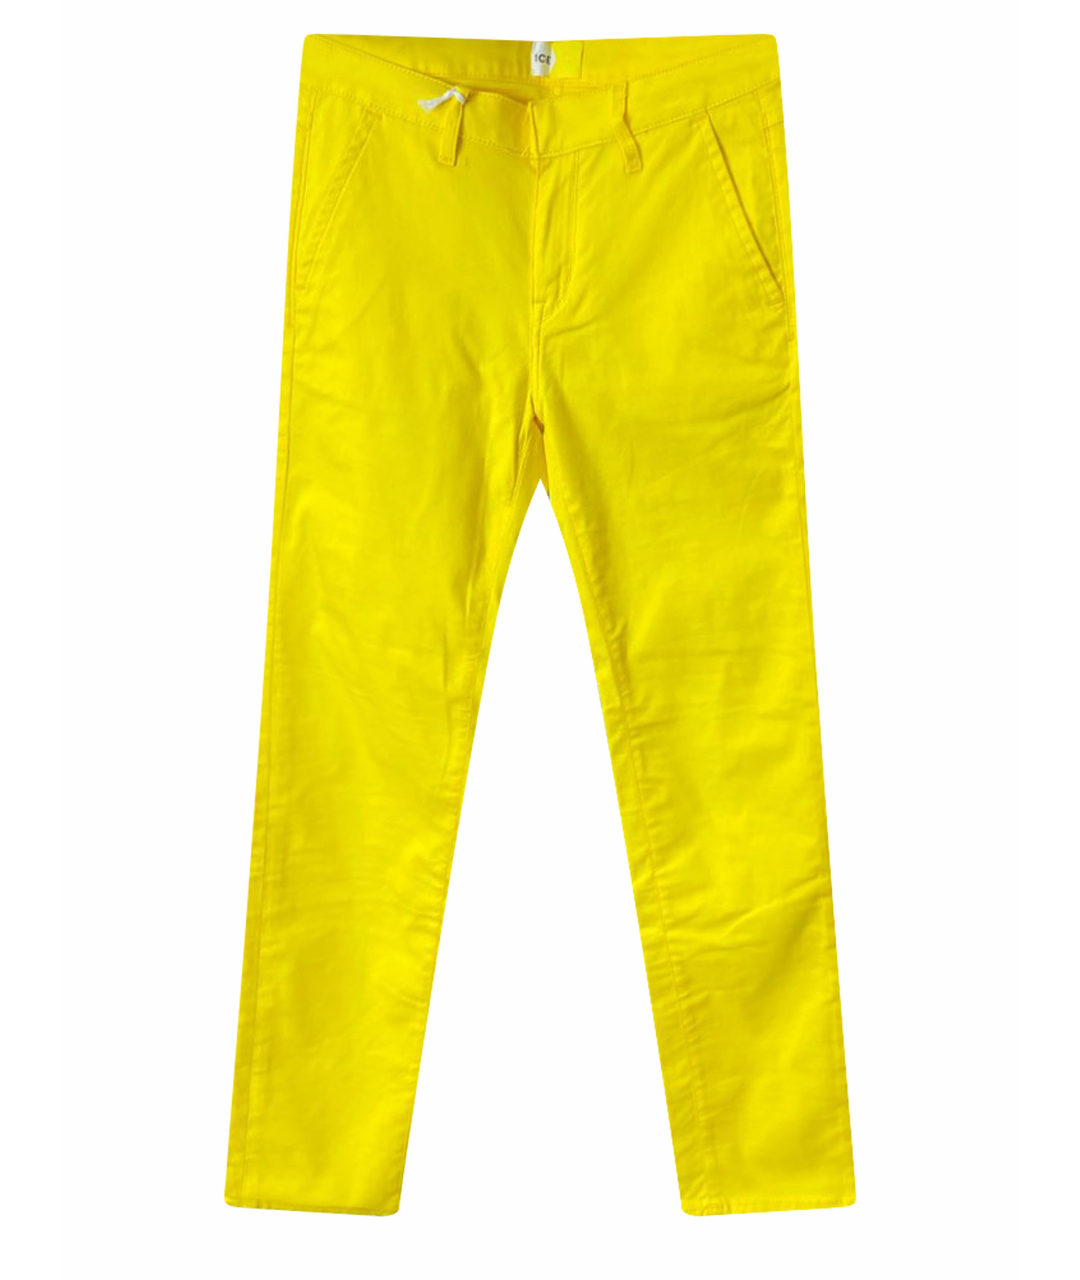 ICE PLAY Желтые хлопковые джинсы слим, фото 1